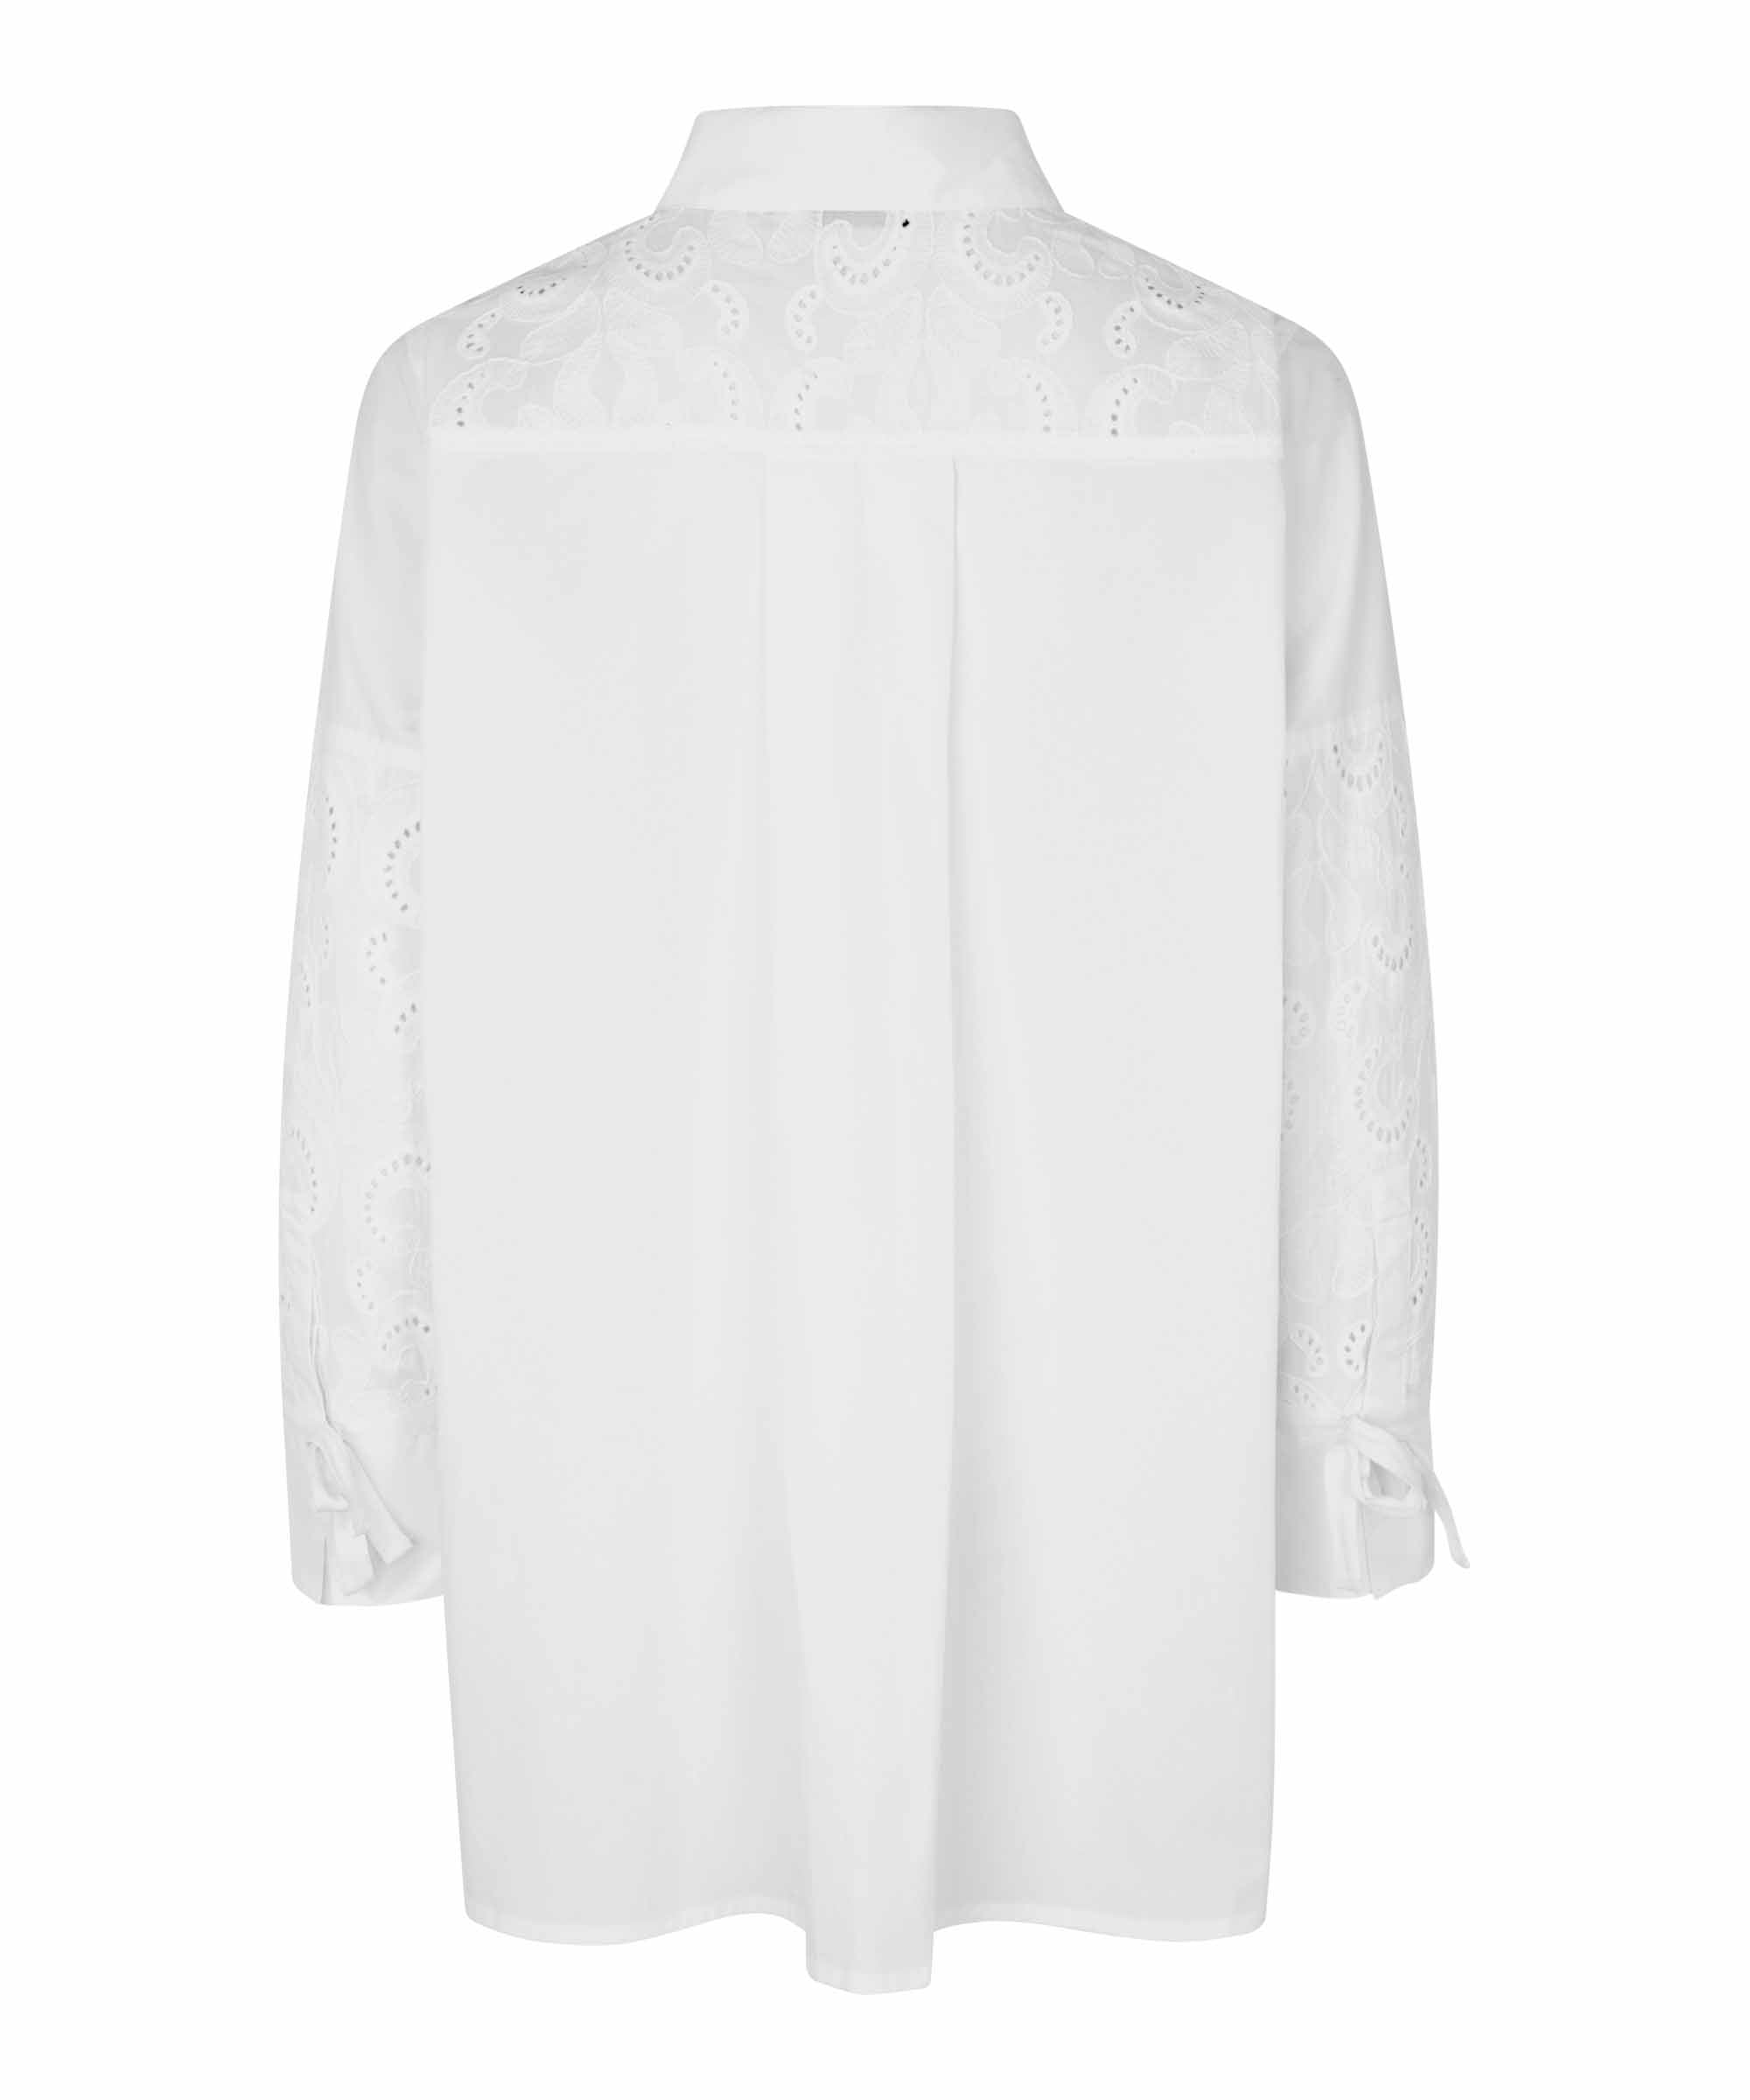 Fridja Hooded Linen Shirt Women Long Sleeeve Cotton Tunic Tops